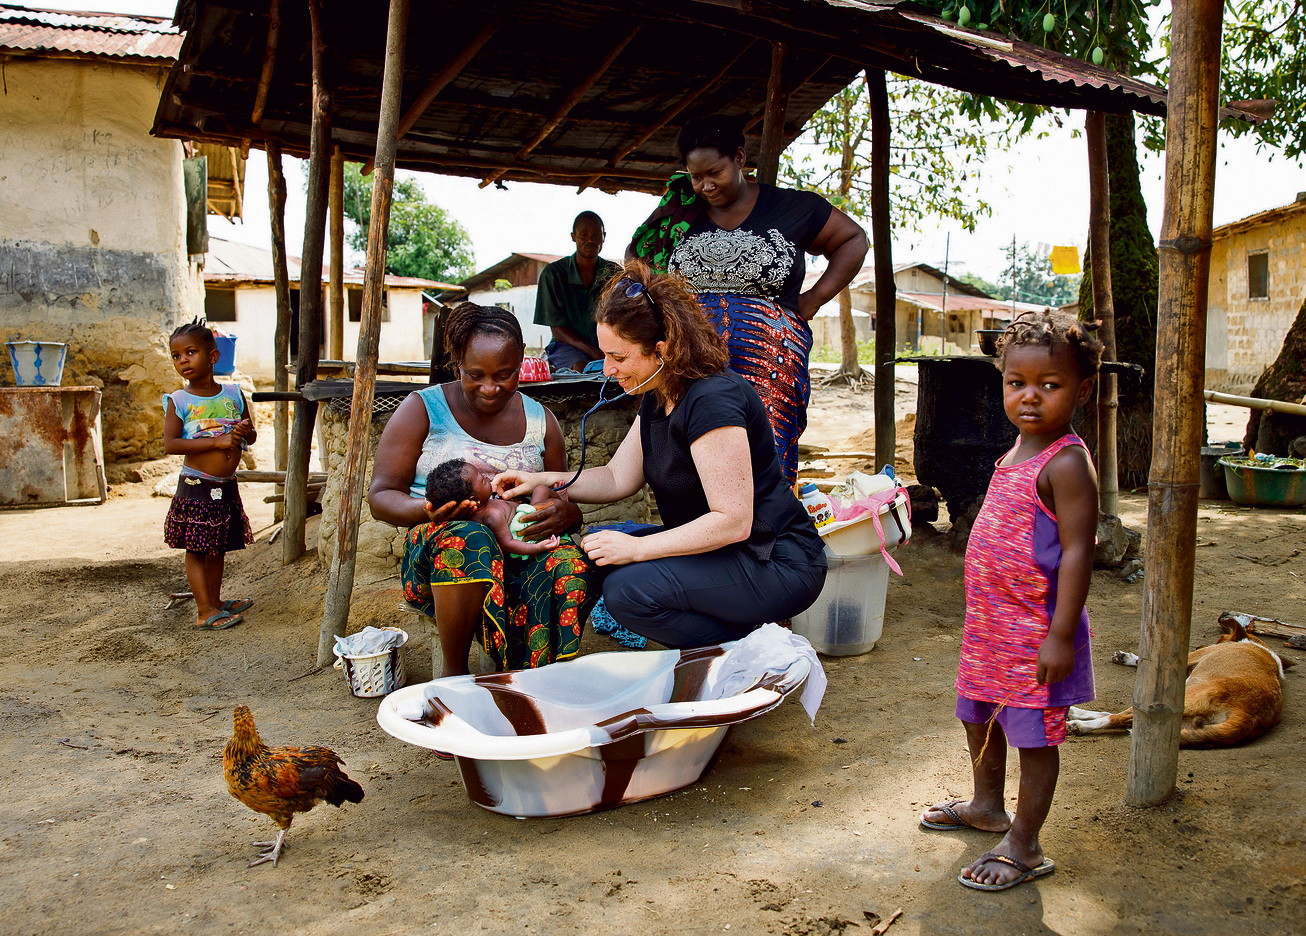 אמבטיה בחצר בניגריה: ד"ר מרום בפעולה | צילום: זיו קורן